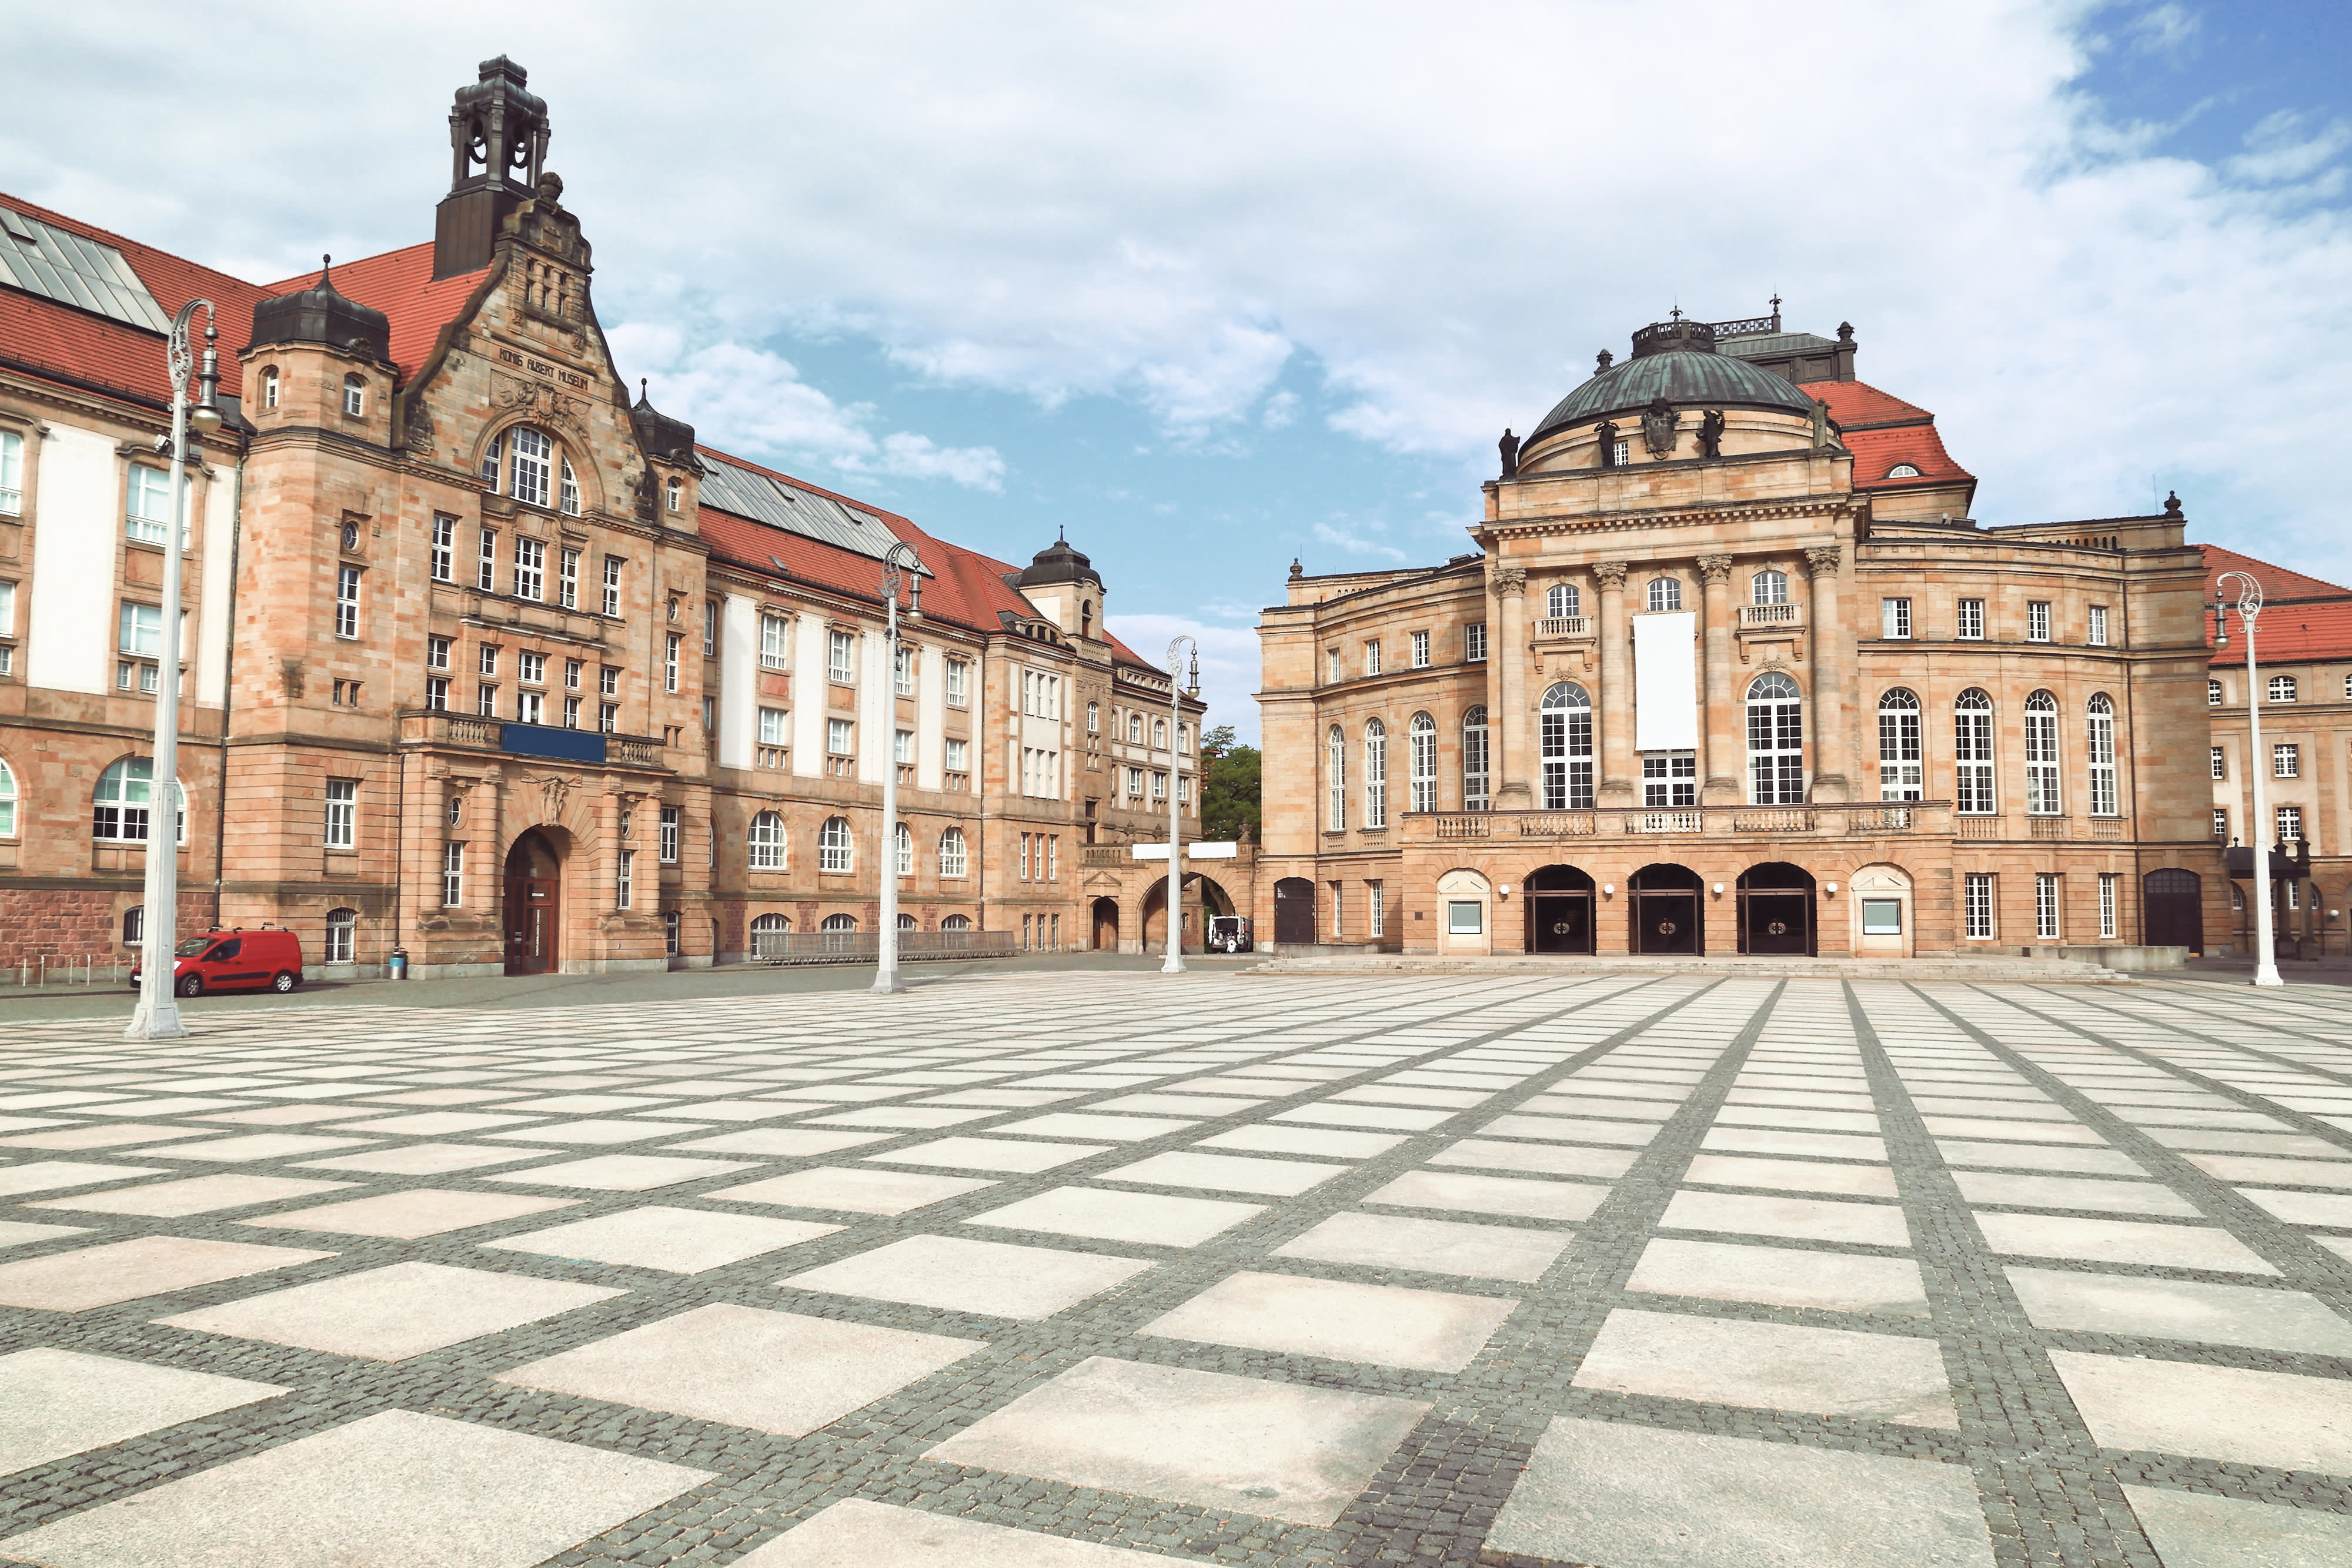 Titelbild auf Studiengangseite "duales Studium Chemnitz": Stadtblick